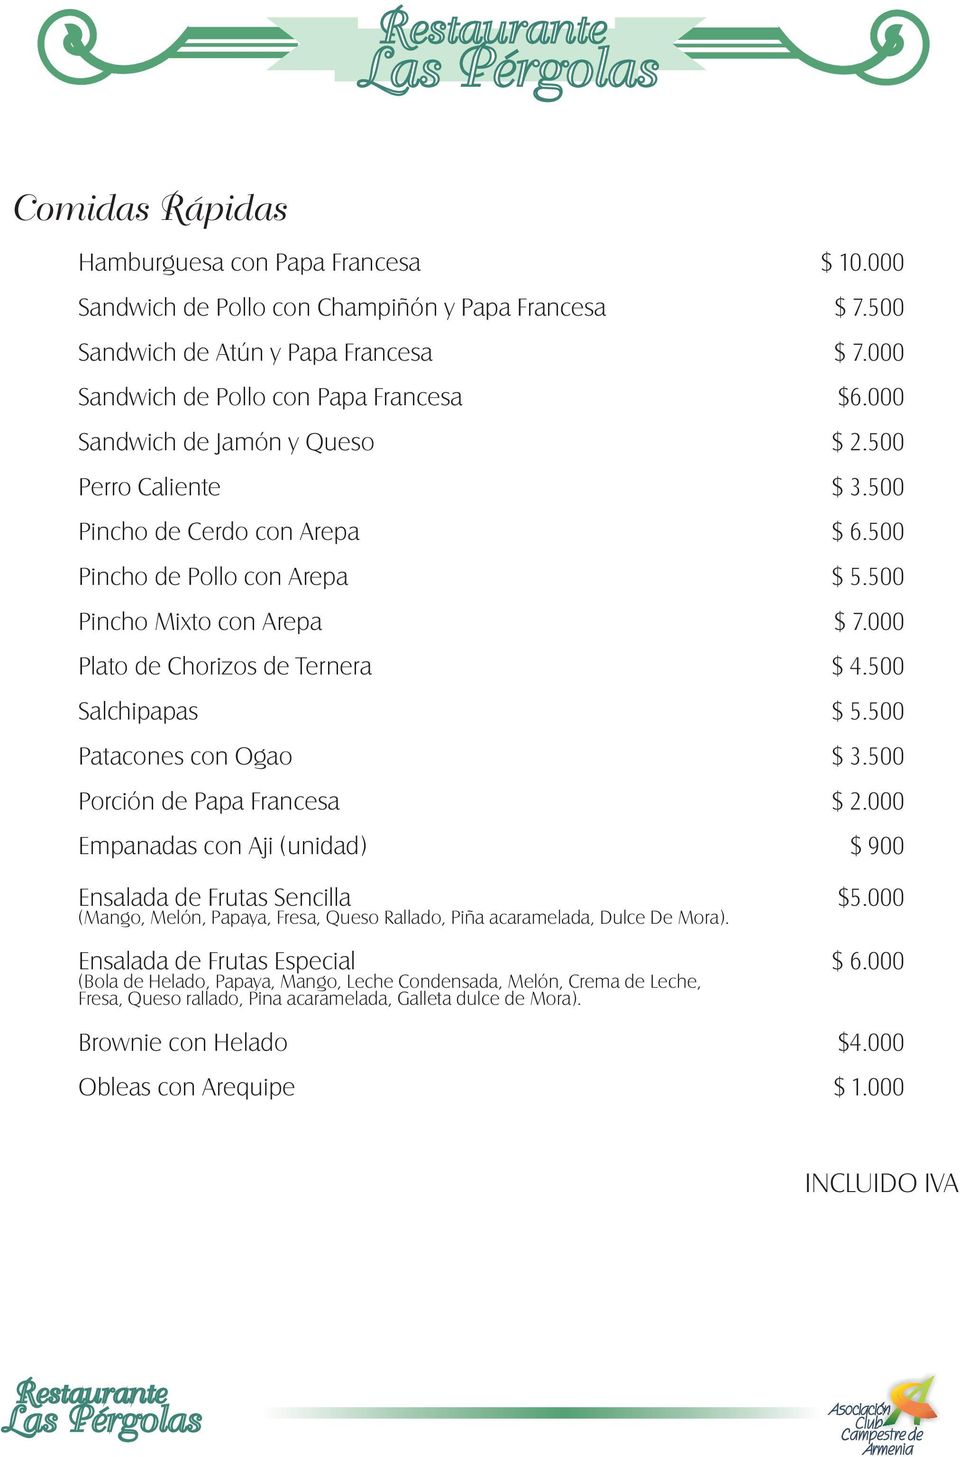 500 Salchipapas $ 5.500 Patacones con Ogao $ 3.500 Porción de Papa Francesa $ 2.000 Empanadas con Aji (unidad) $ 900 Ensalada de Frutas Sencilla $5.